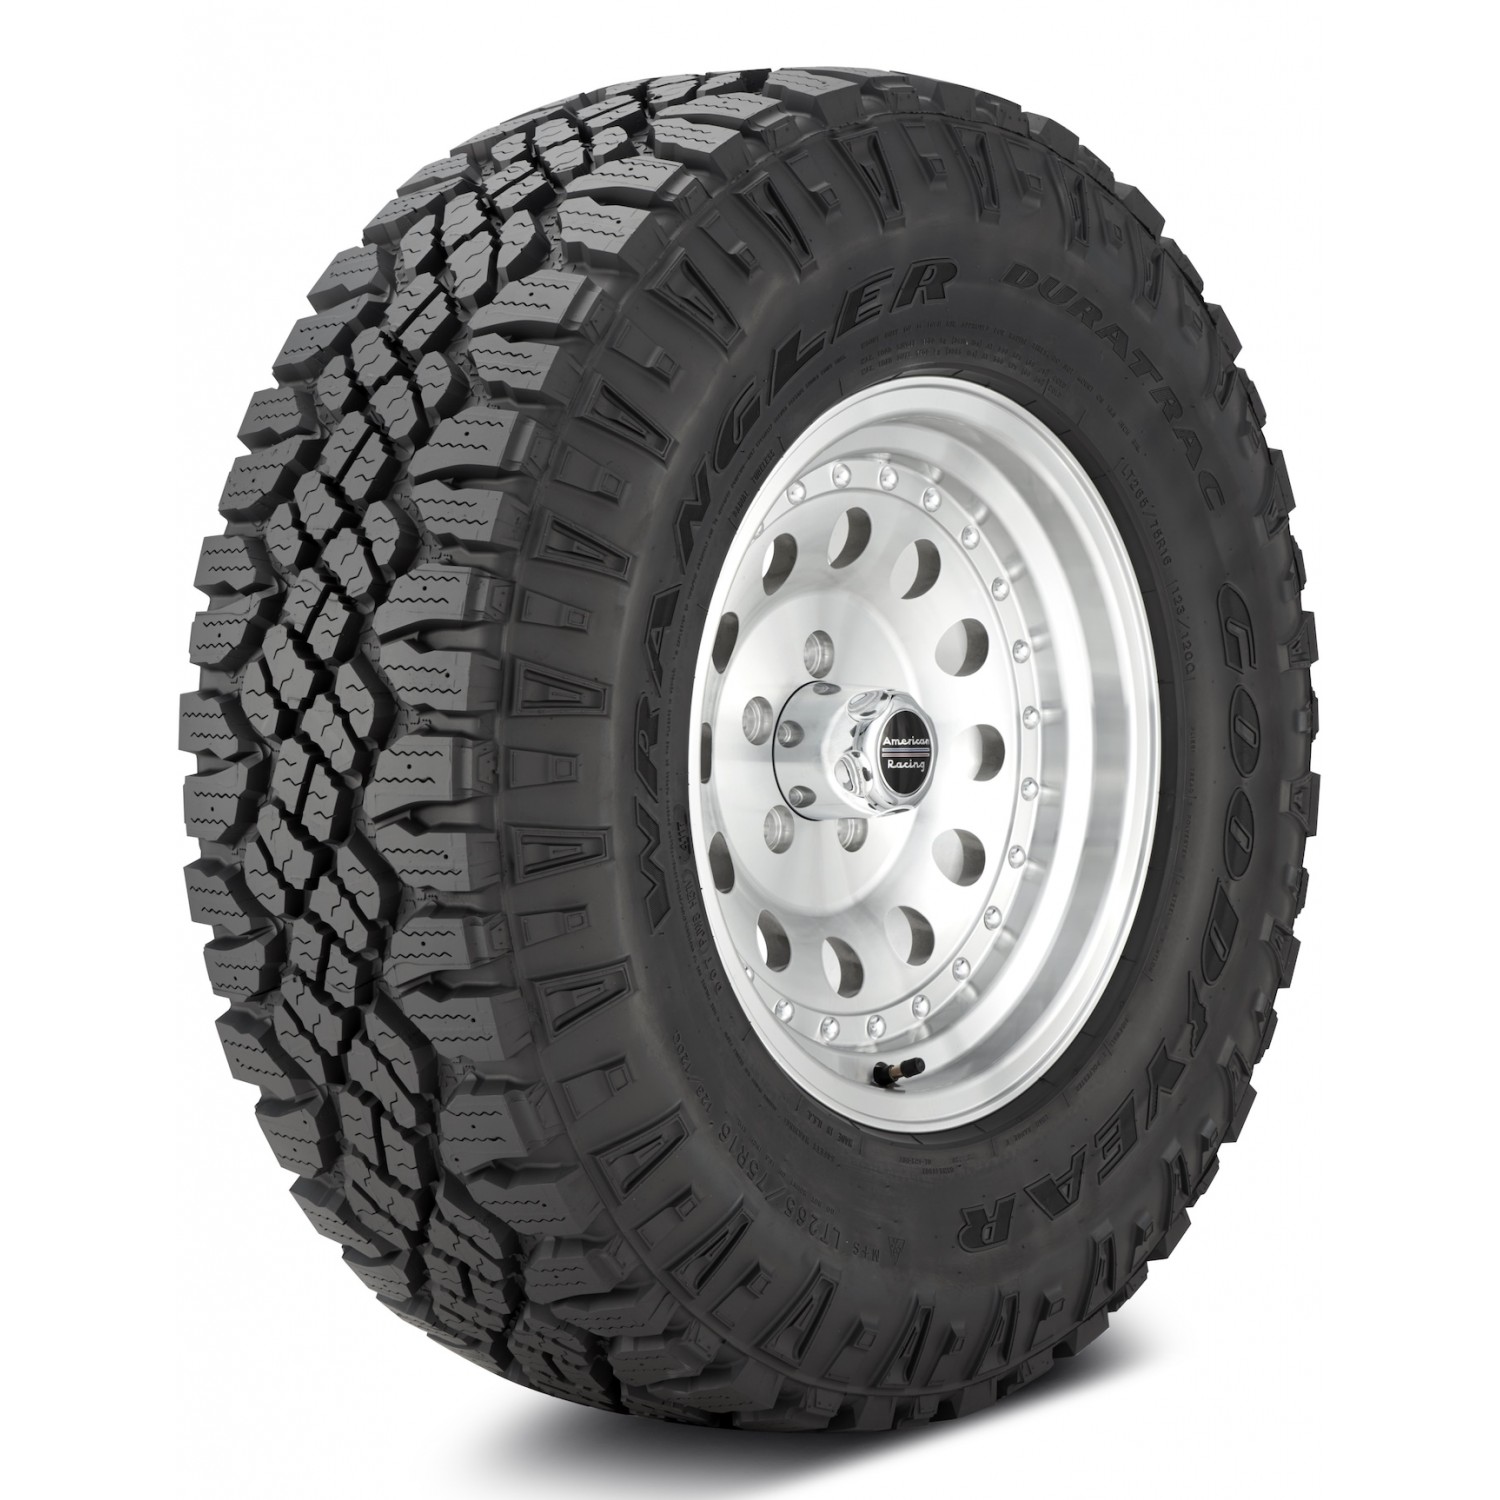 Goodyear Wrangler DuraTrac Black Sidewall Tire (LT275/65R18 123Q) vzn121170